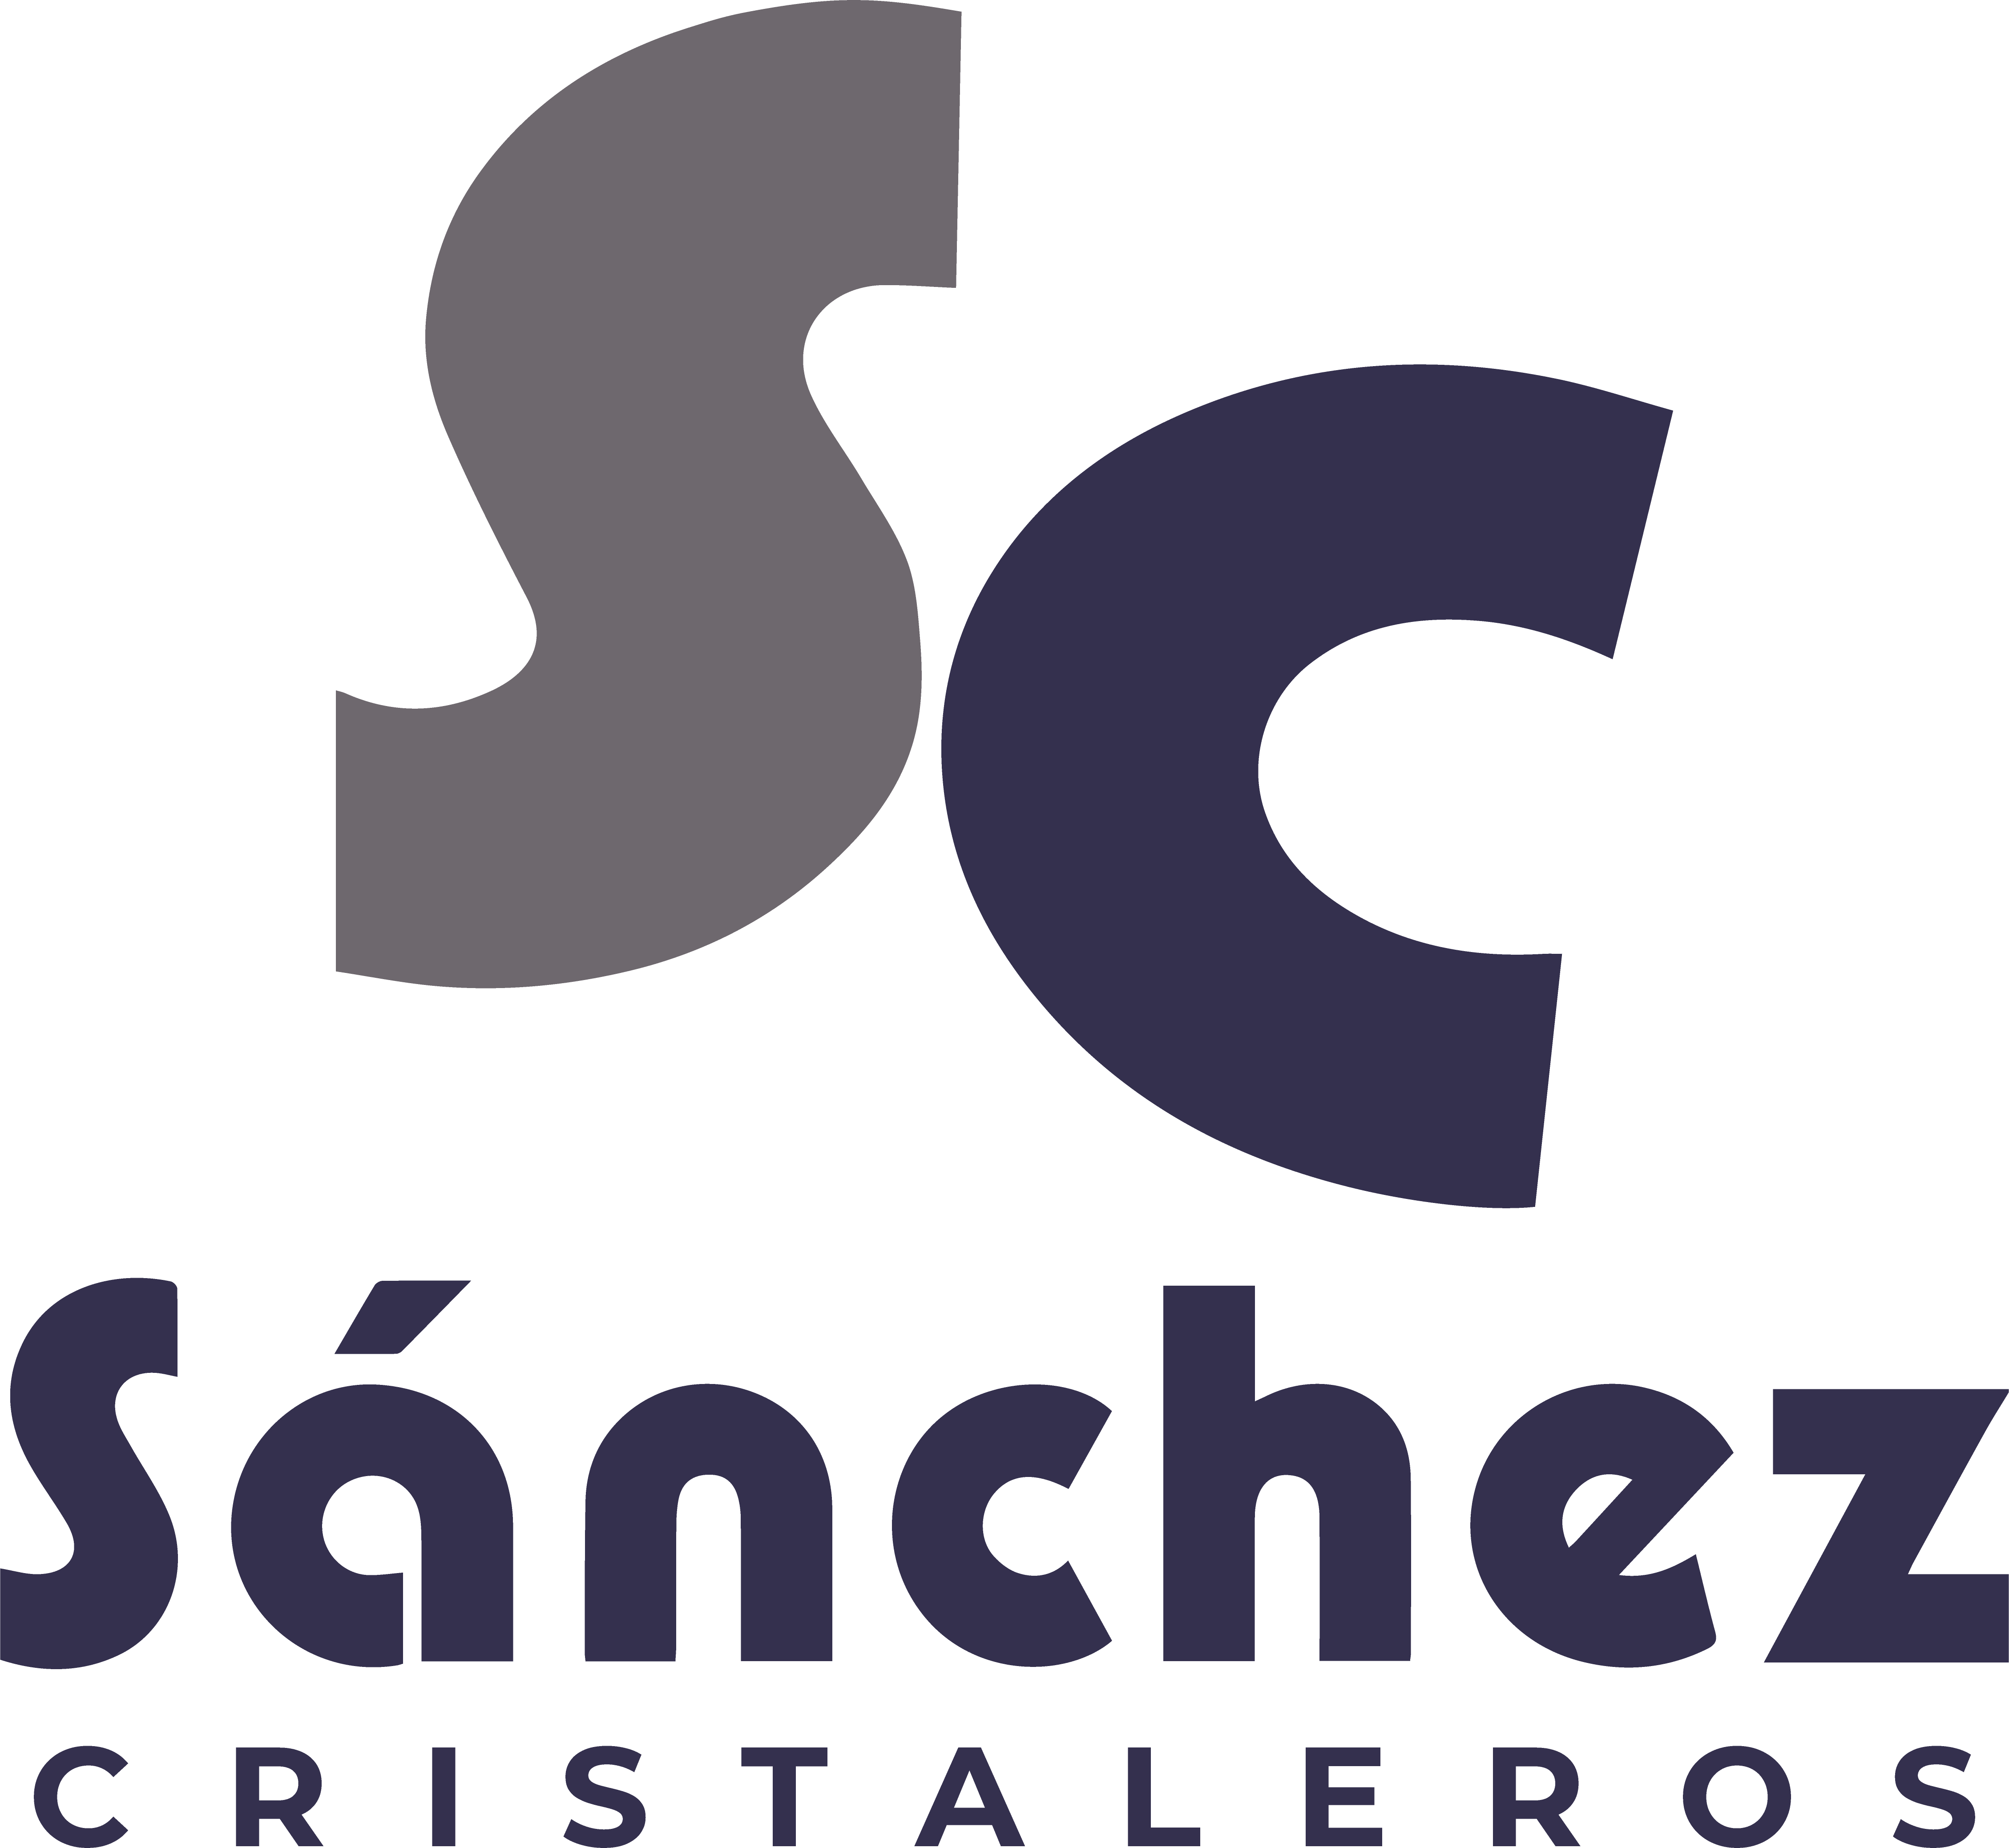 Sanchez Cristaleros